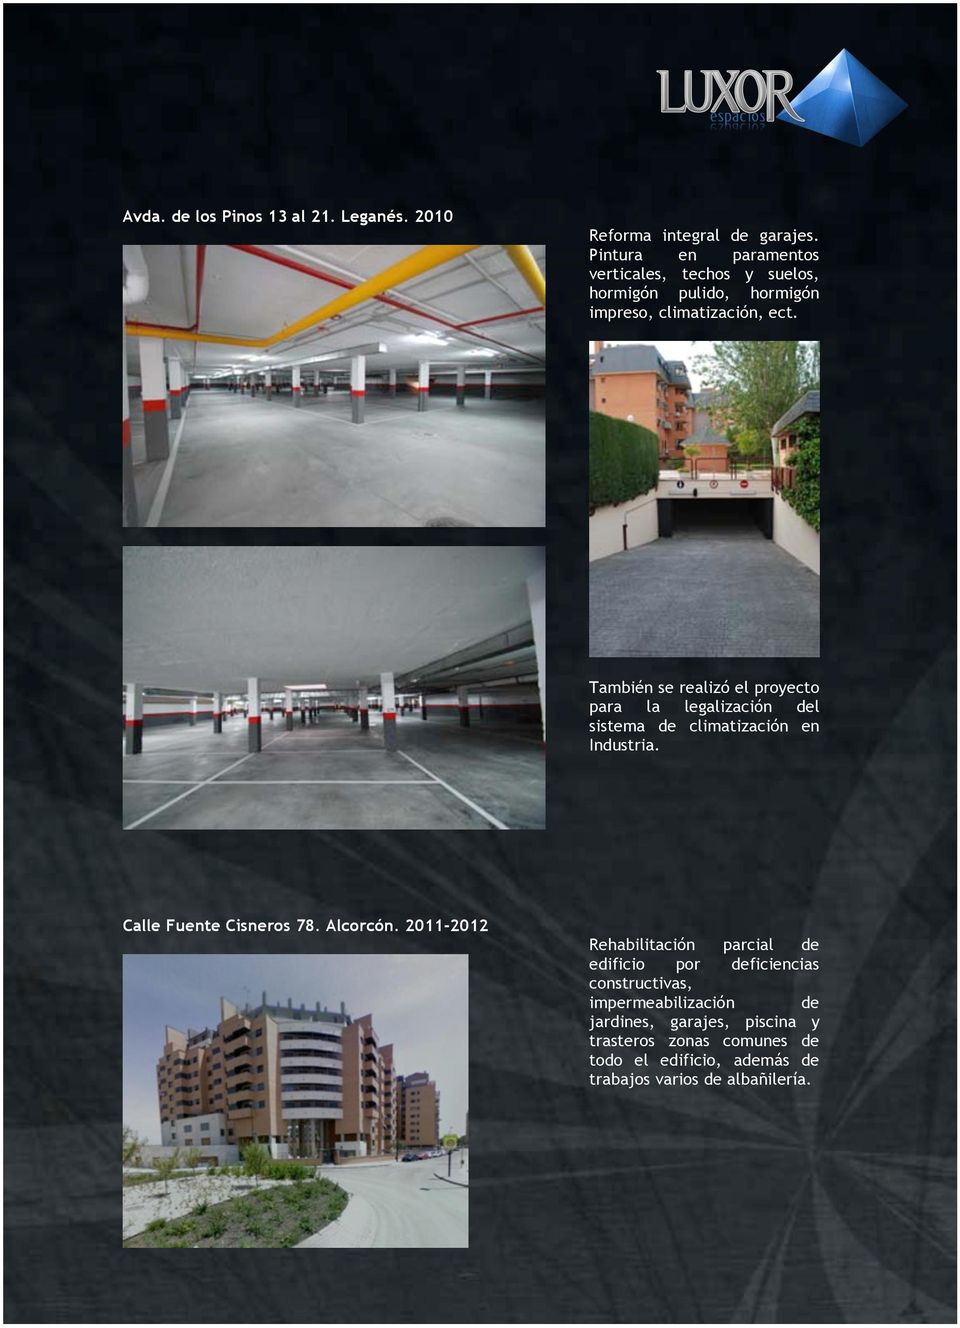 También se realizó el proyecto para la legalización del sistema de climatización en Industria. Calle Fuente Cisneros 78. Alcorcón.